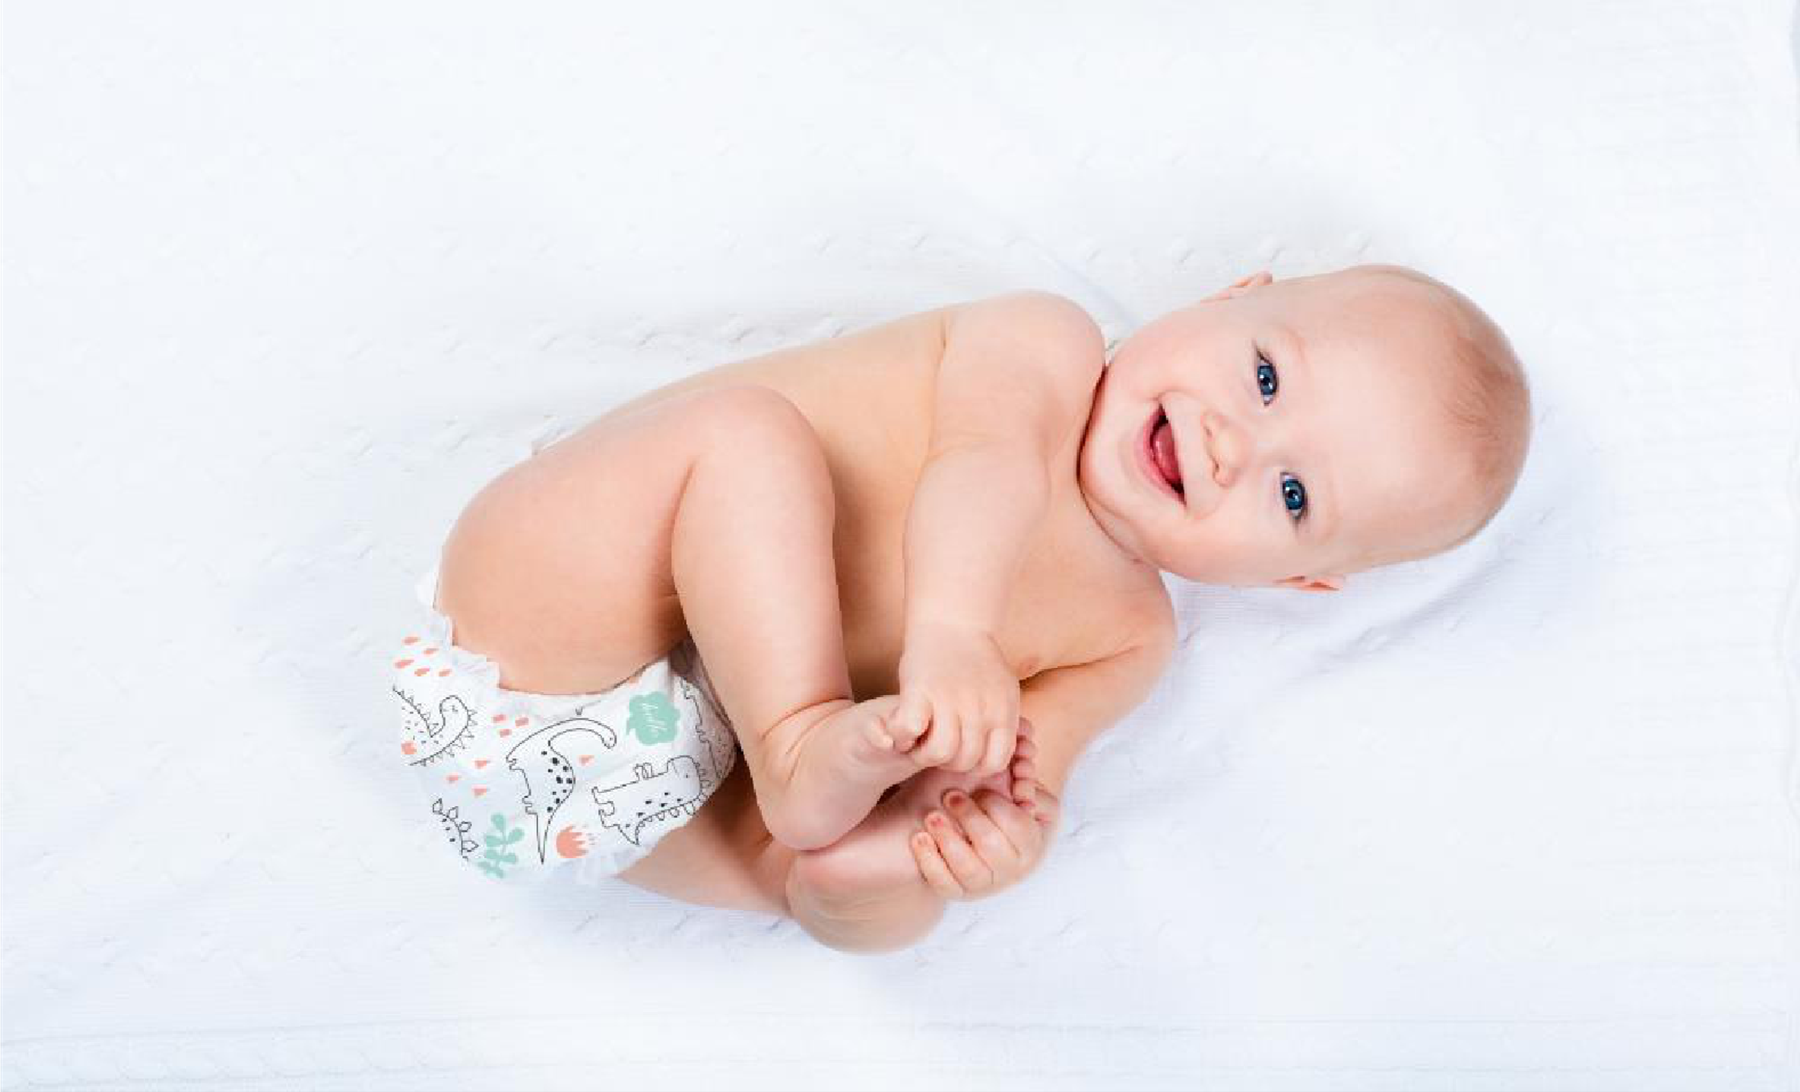 아기를 위해 다채로운 기저귀를 선택하는 이유는 무엇입니까?